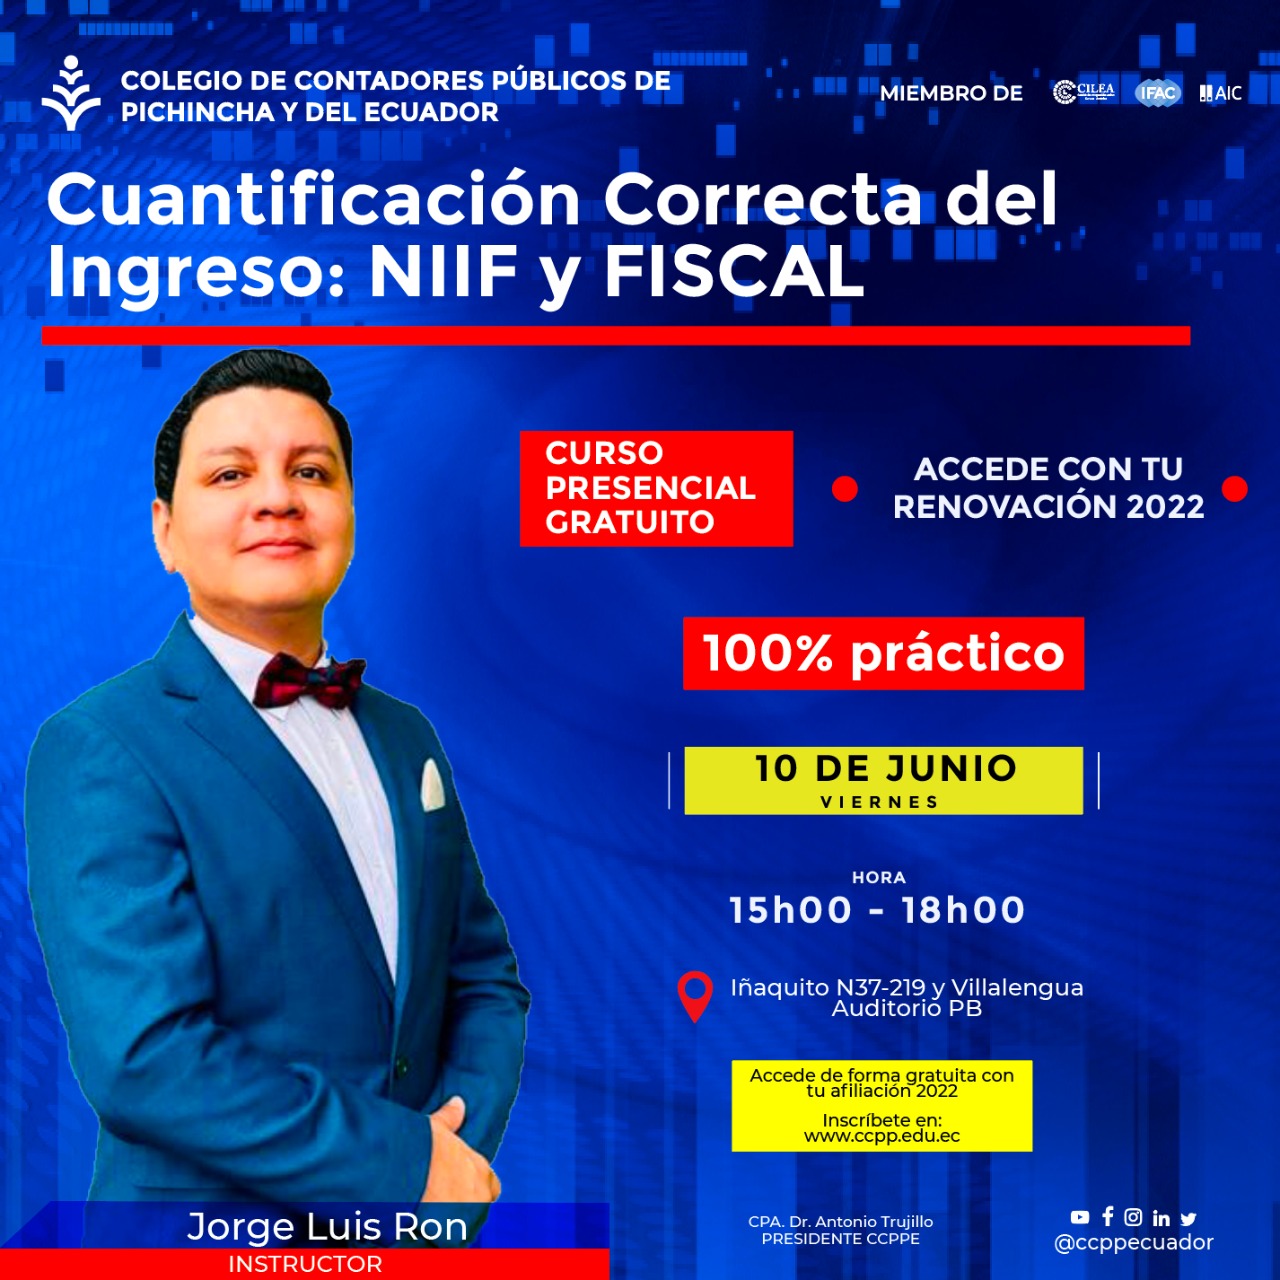 Cuantificación Correcta del Ingreso NIIF y Fiscal - 10 JUNIO 2022